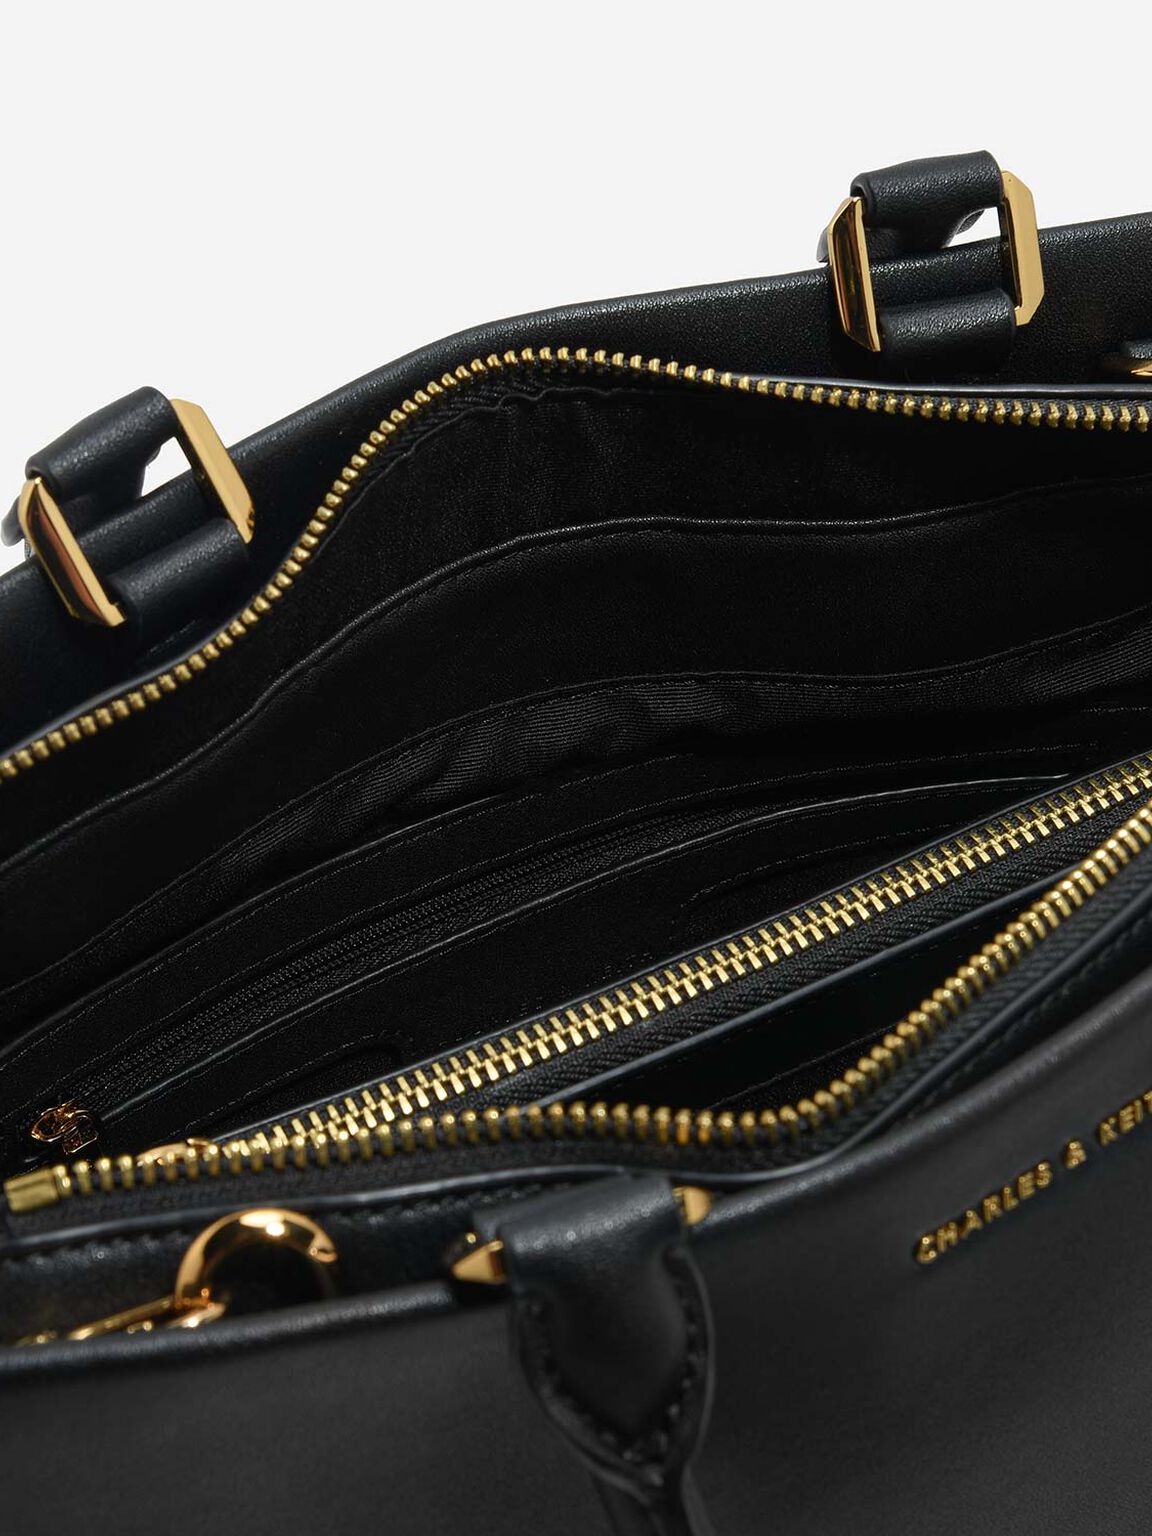 Classic Structured Handbag, Black, hi-res